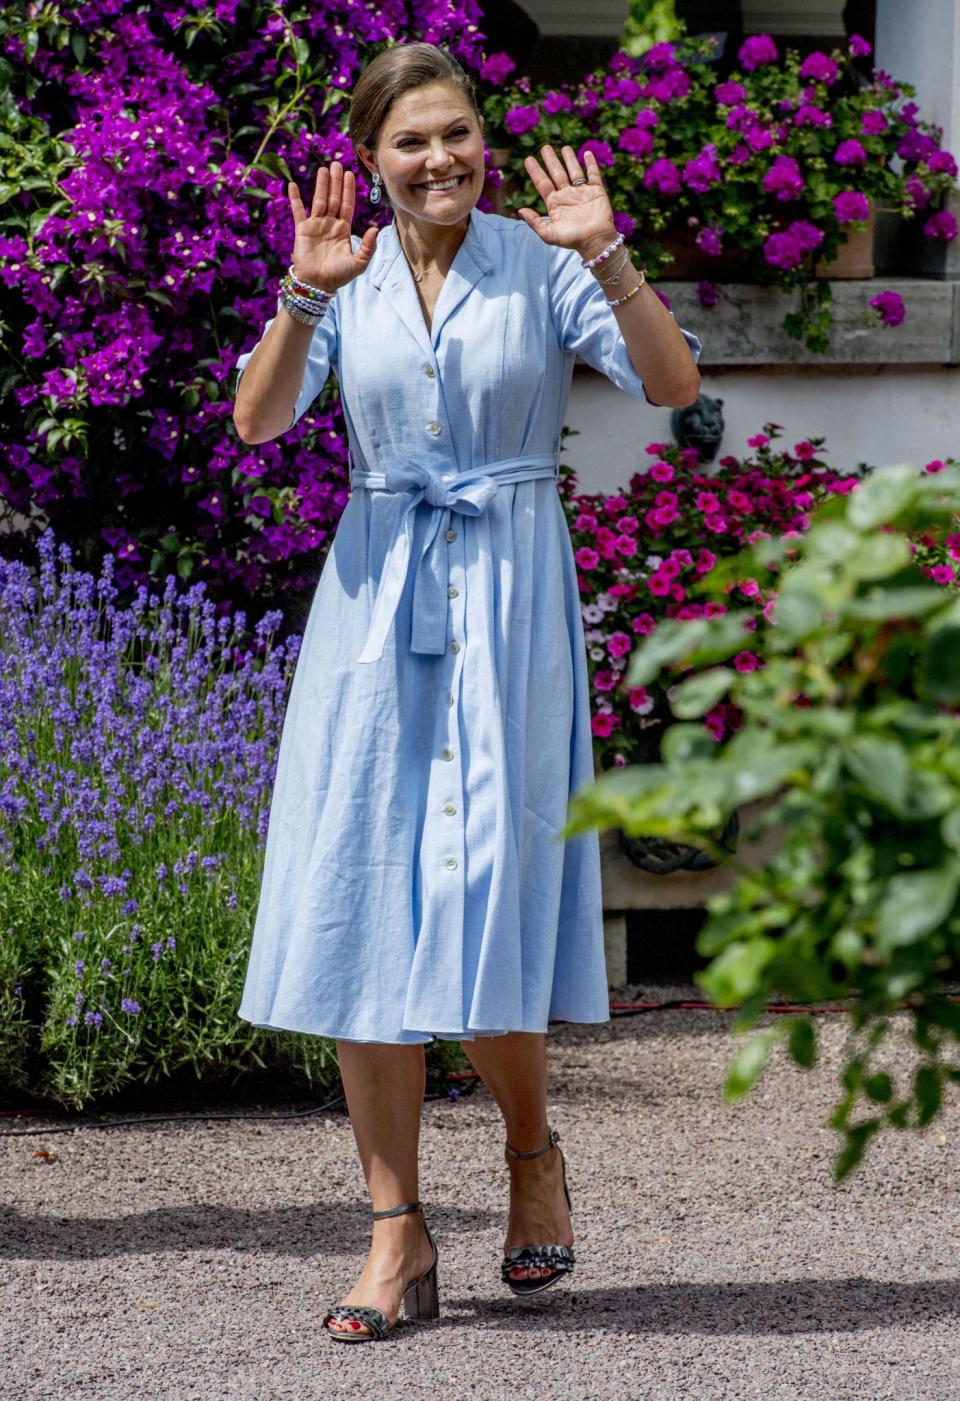 <p>Himmlisch! Kronprinzessin Victoria von Schweden trug an ihrem 40. Geburtstag ein hellblaues Sommerkleid mit durchgehender Knopfleiste und Schleife an der Taille. (Bild: Rex Features) </p>